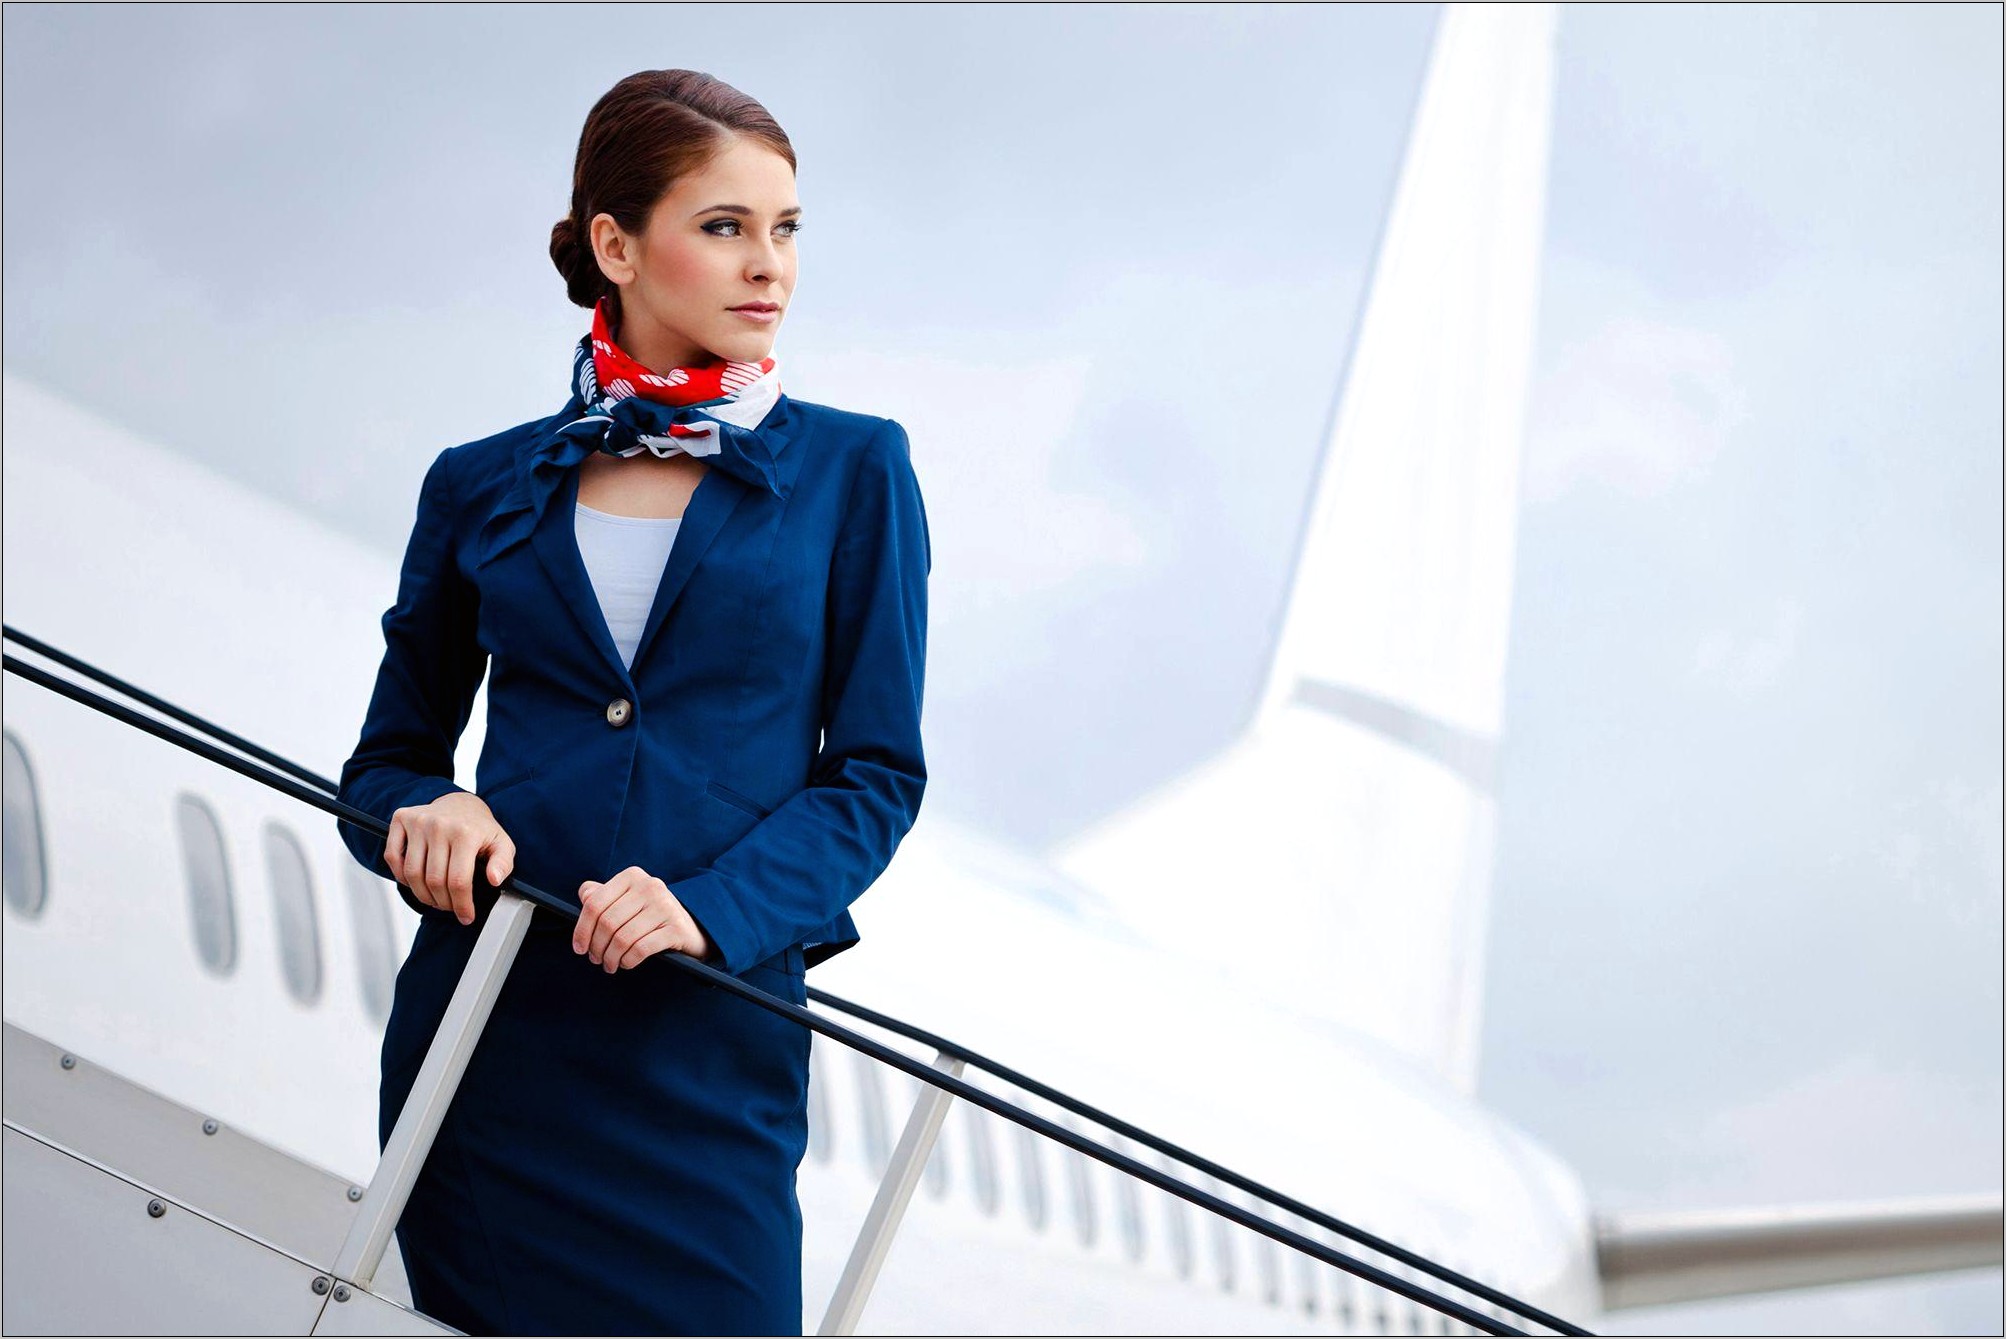 Resume Tips To Get Flight Attendant Job